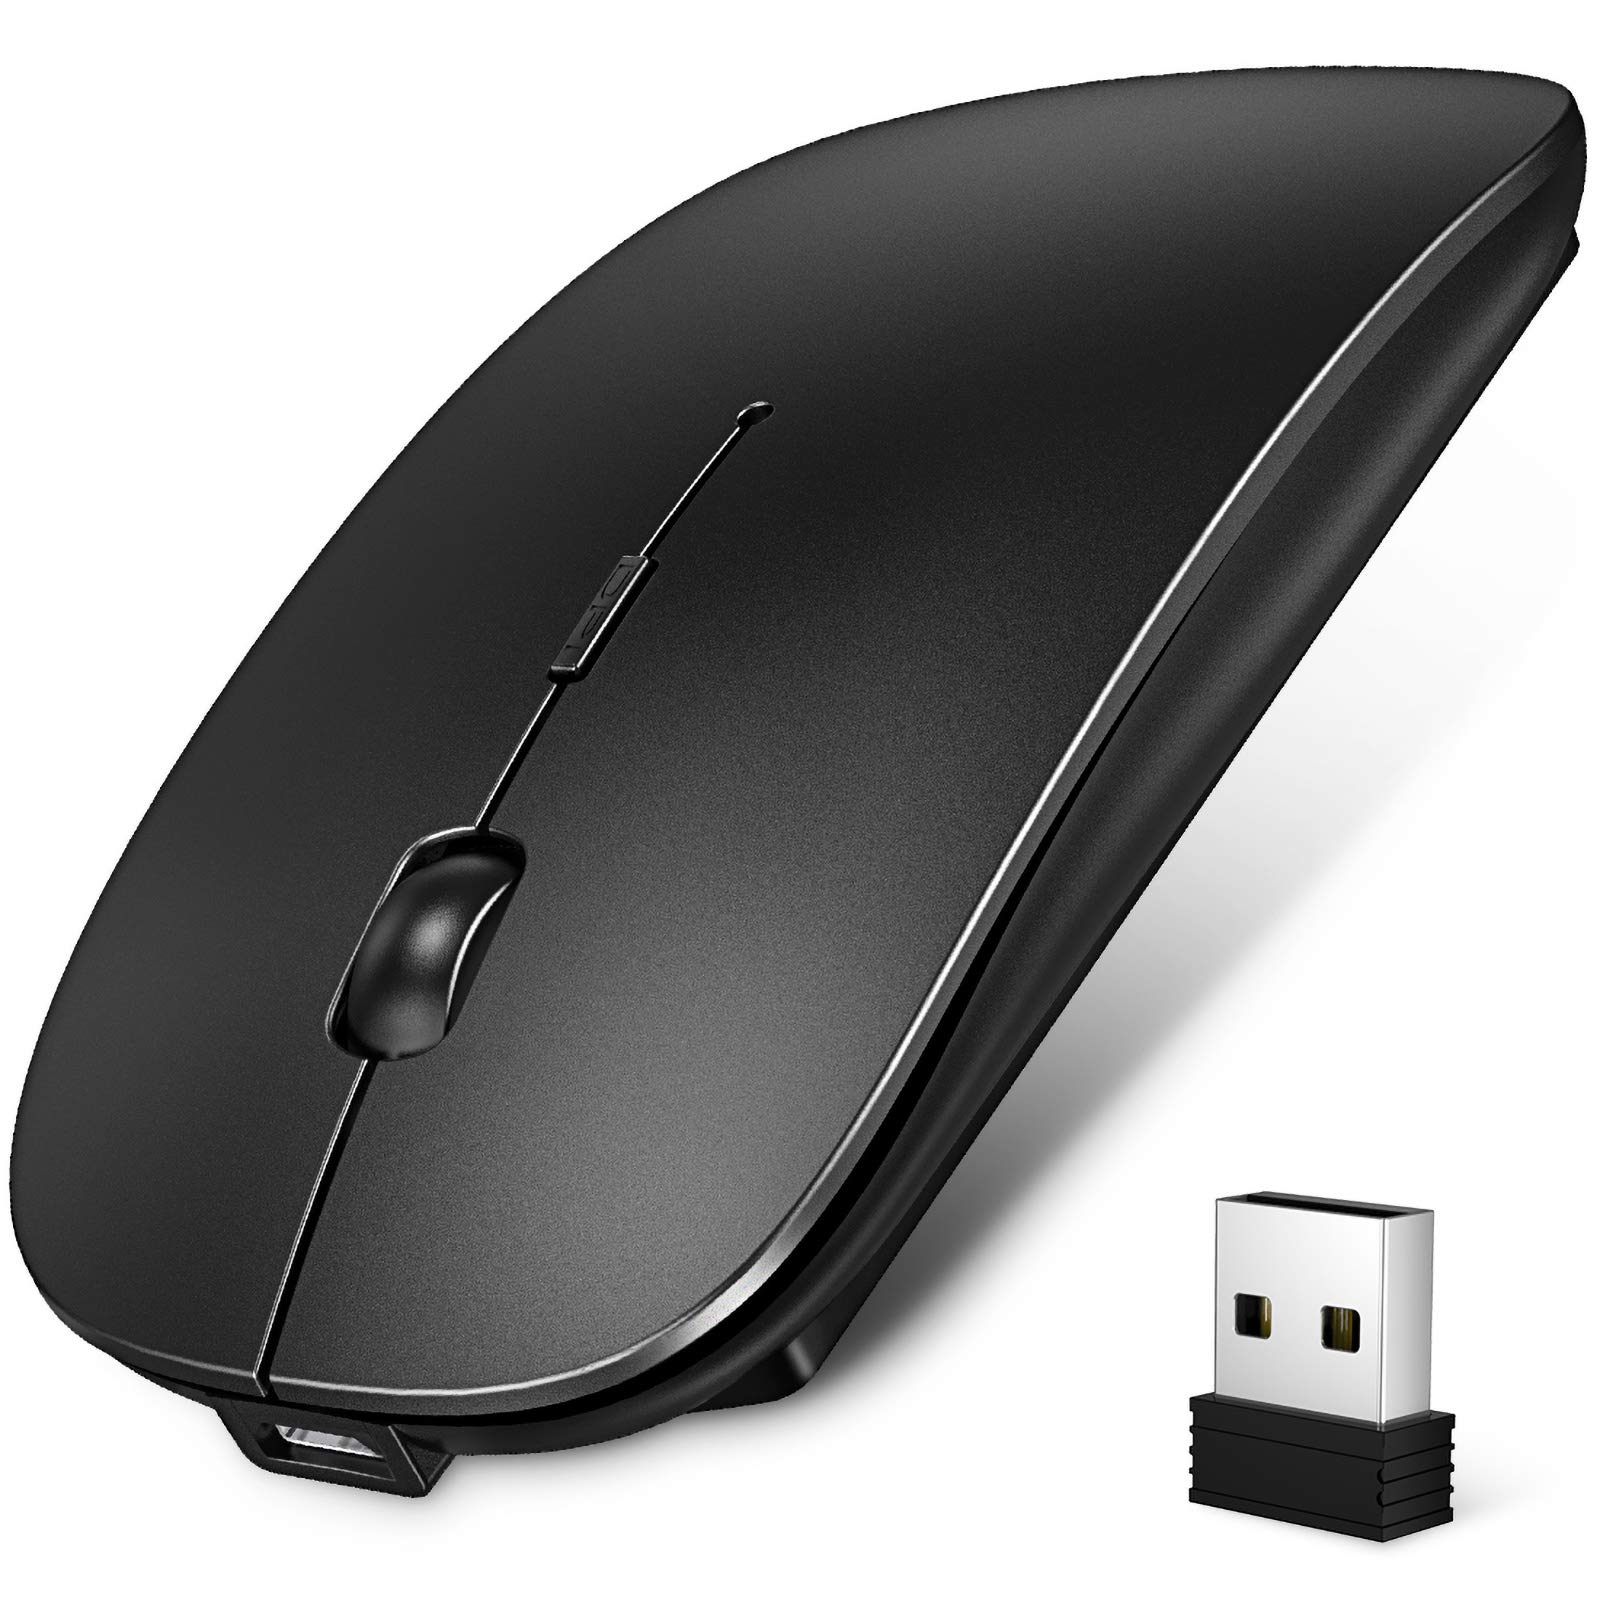 ワイヤレスマウス Bluetooth マウス 薄型 無線マウス 静音 2.4GHz 光学式 3DPIモード 高精度 充電式 省エネルギー 持ち運び便利 iPhone/iPad/Mac/Windows/PC/Laptop/Macbookなど多機種対応 (ブラック)